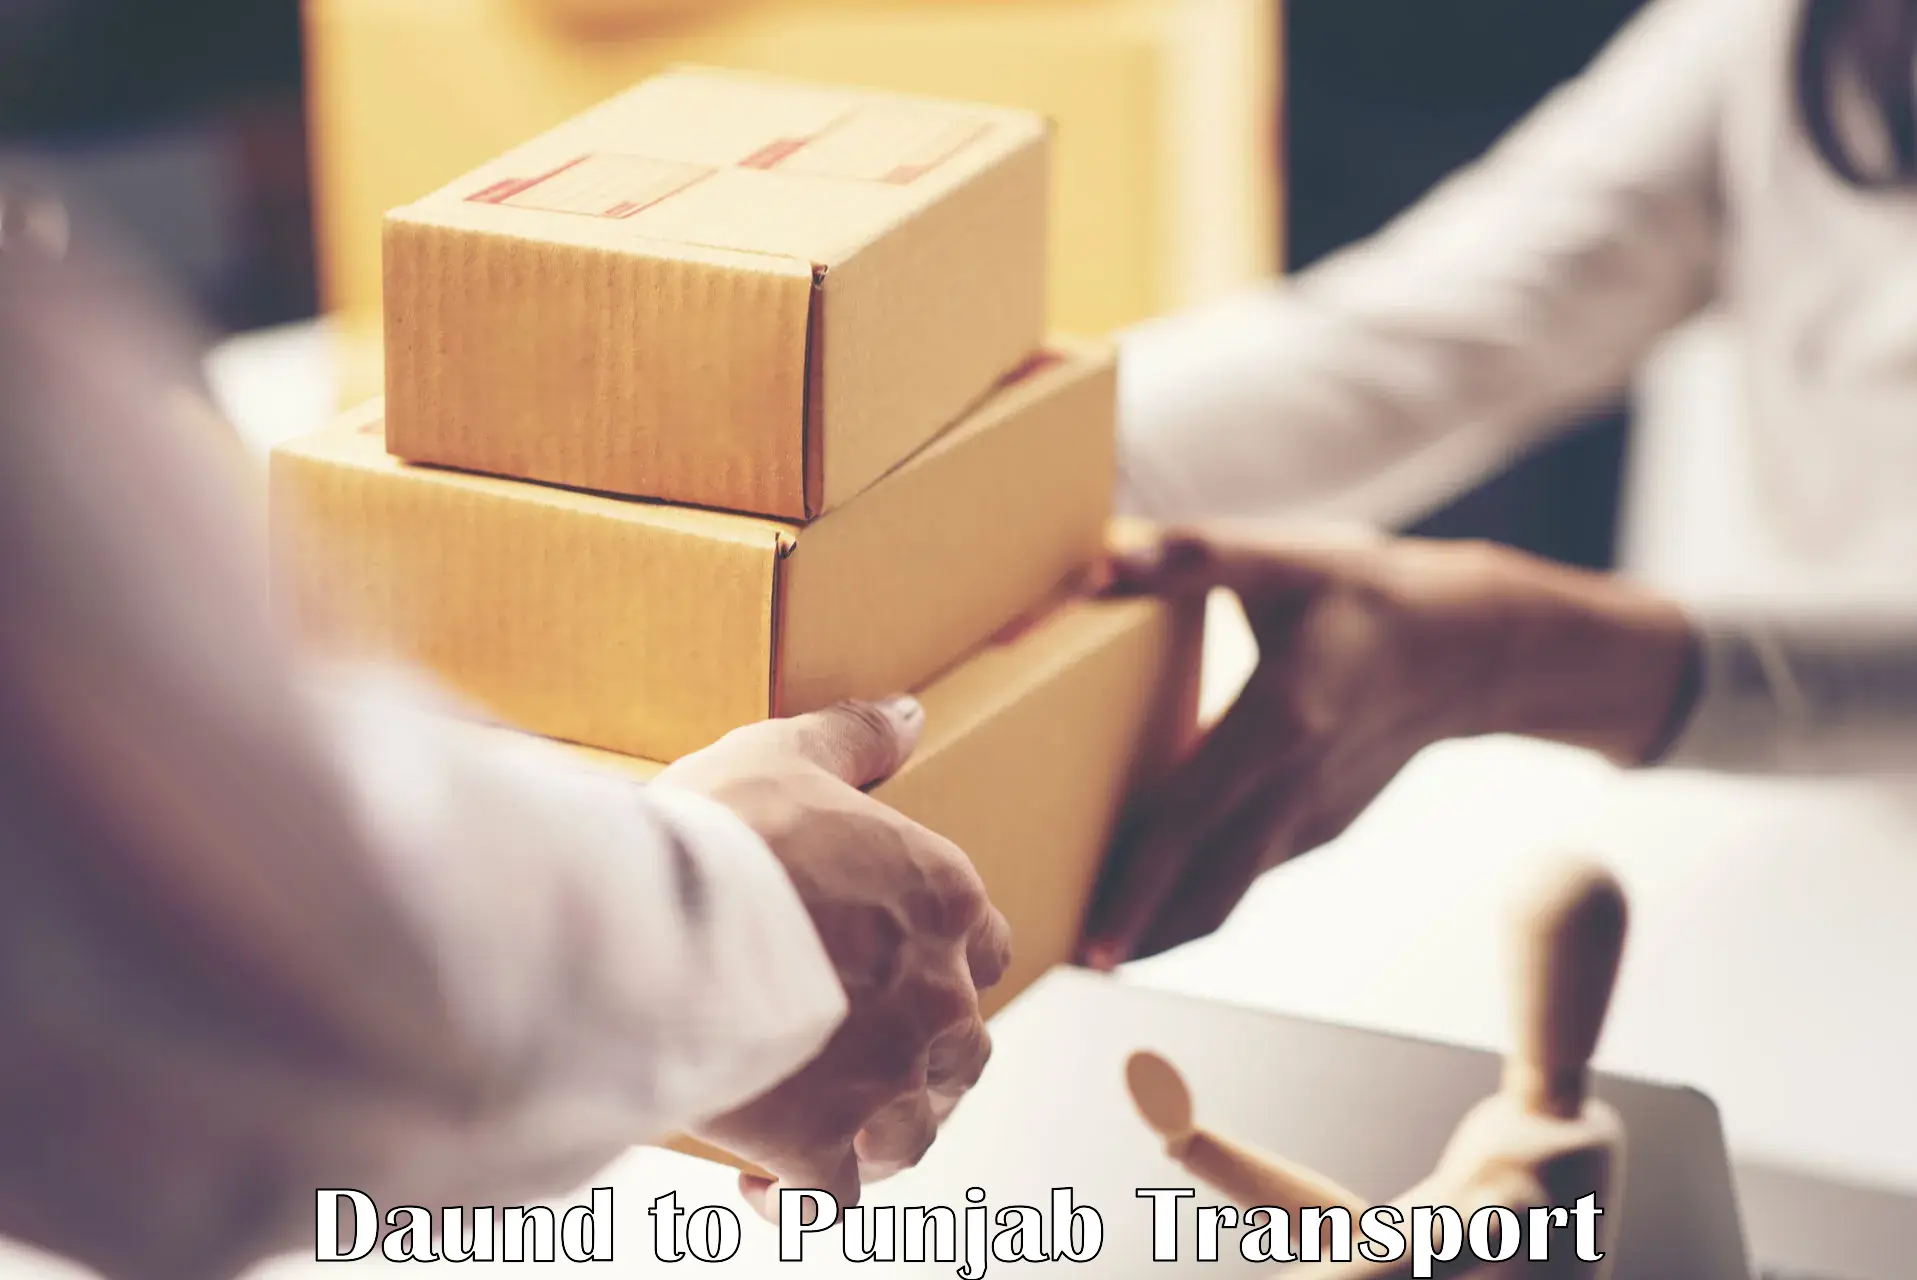 Furniture transport service Daund to IIT Ropar